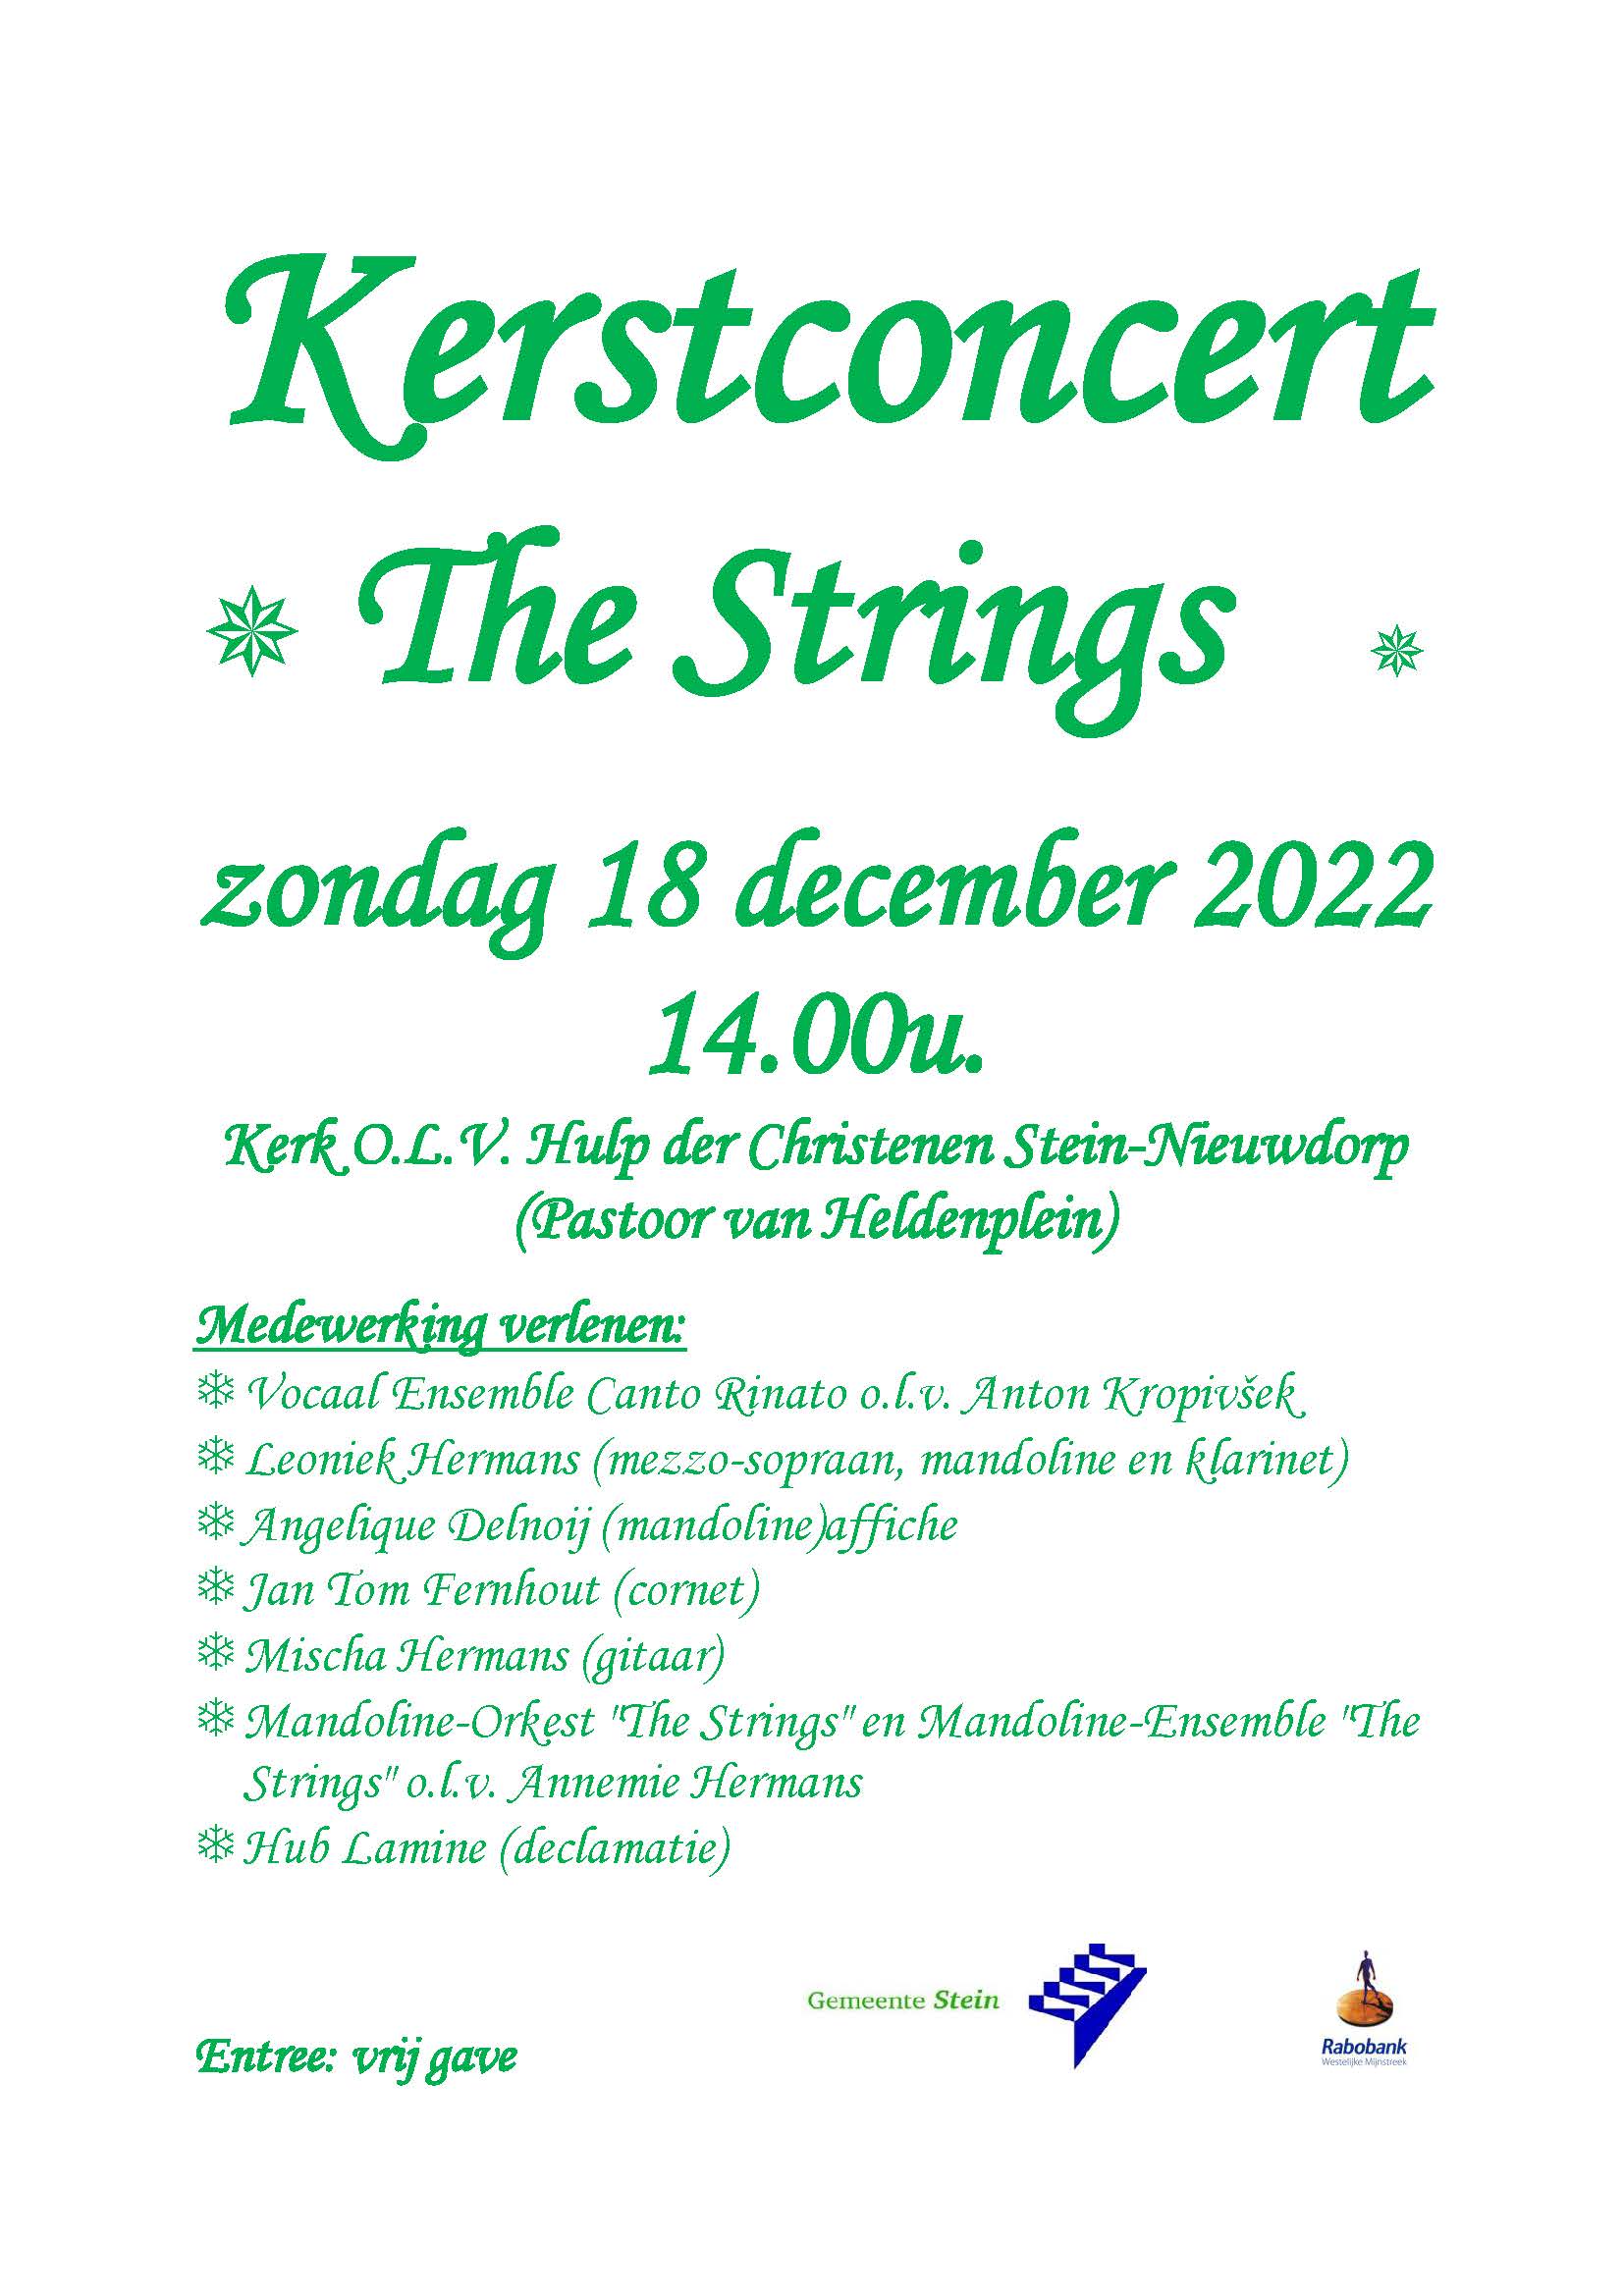 Kerstconcert The Strings